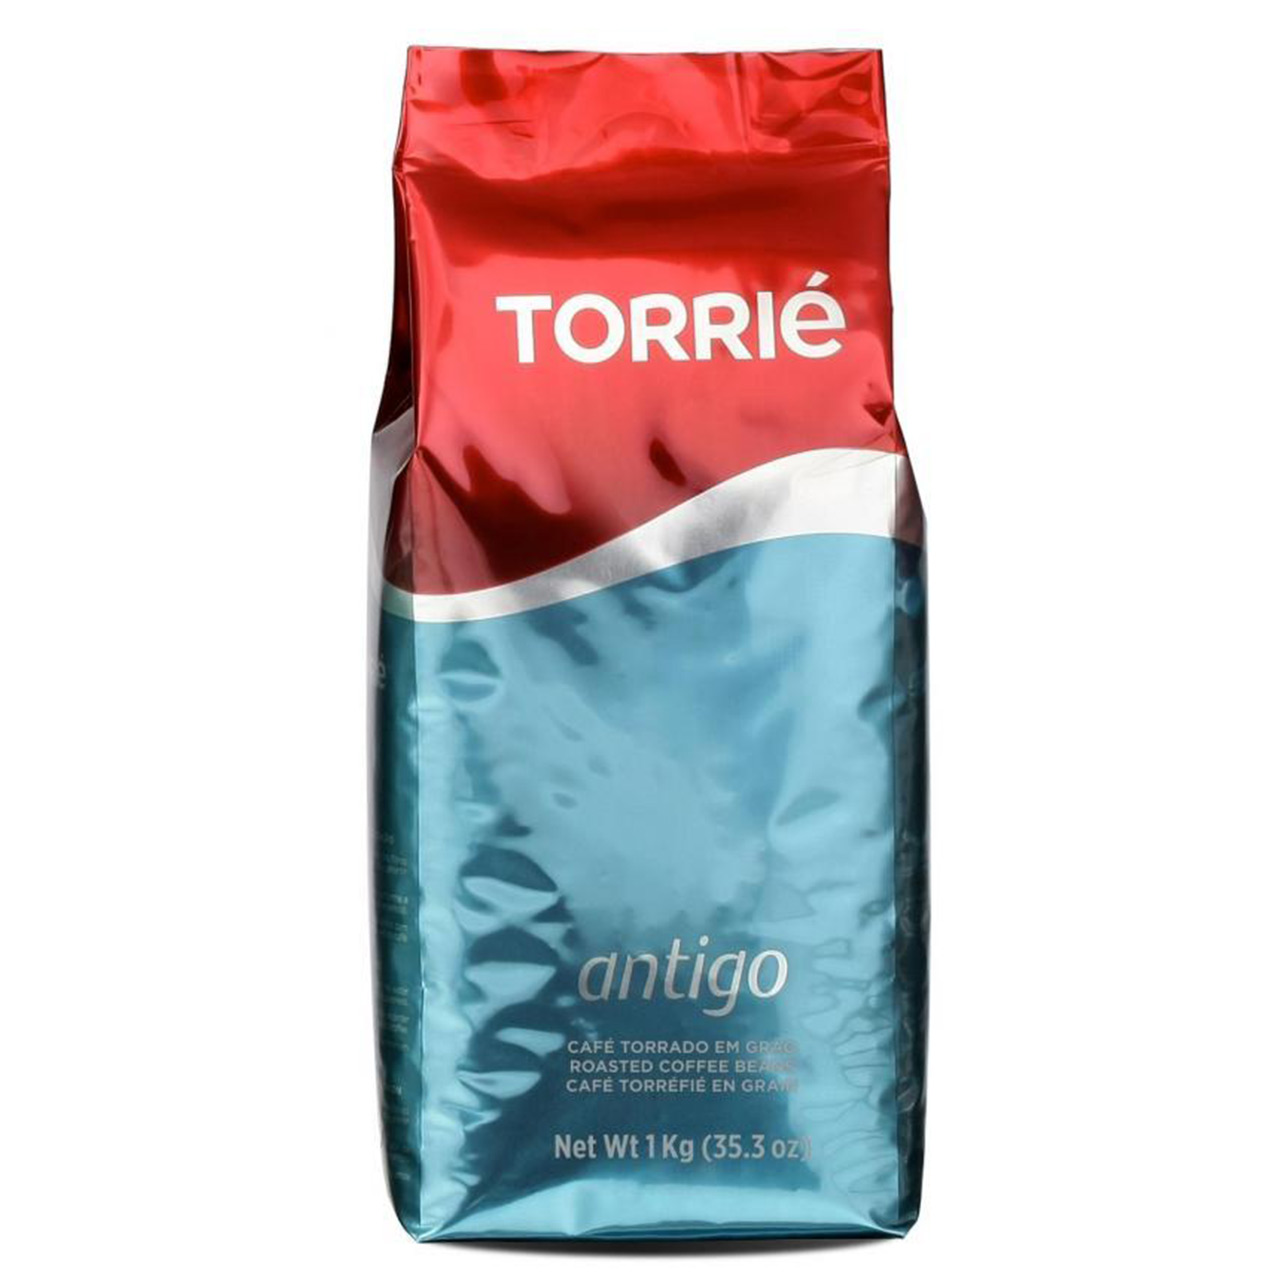 دانه قهوه توری مدل TORRIE Antigo